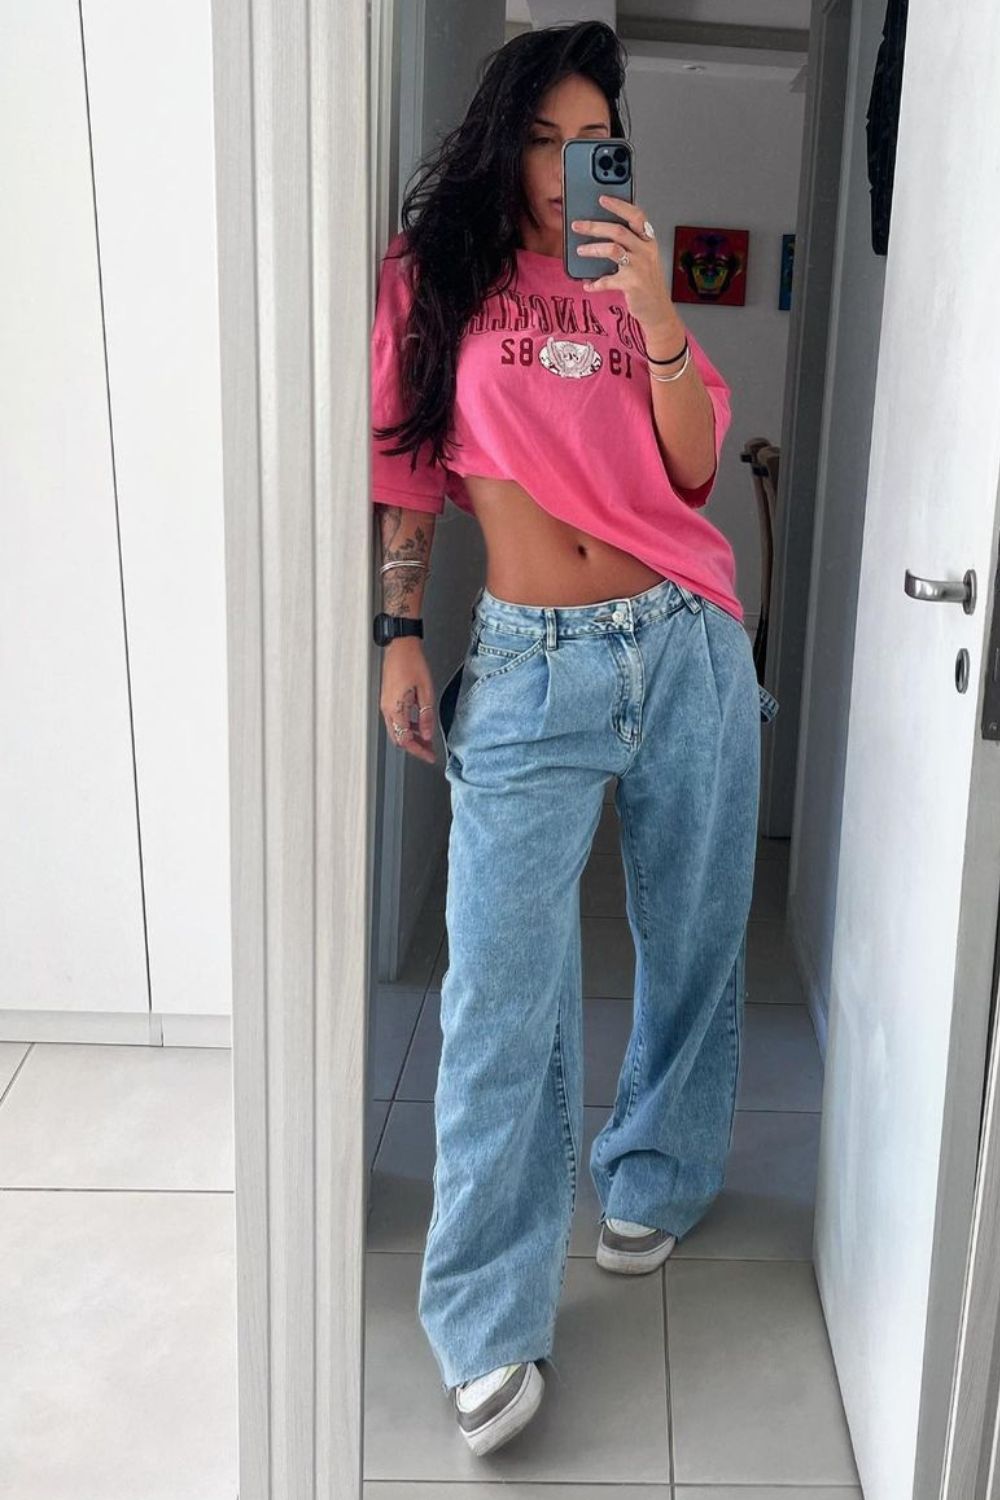 Blusa rosa, calça jeans de cintura baixa e tênis